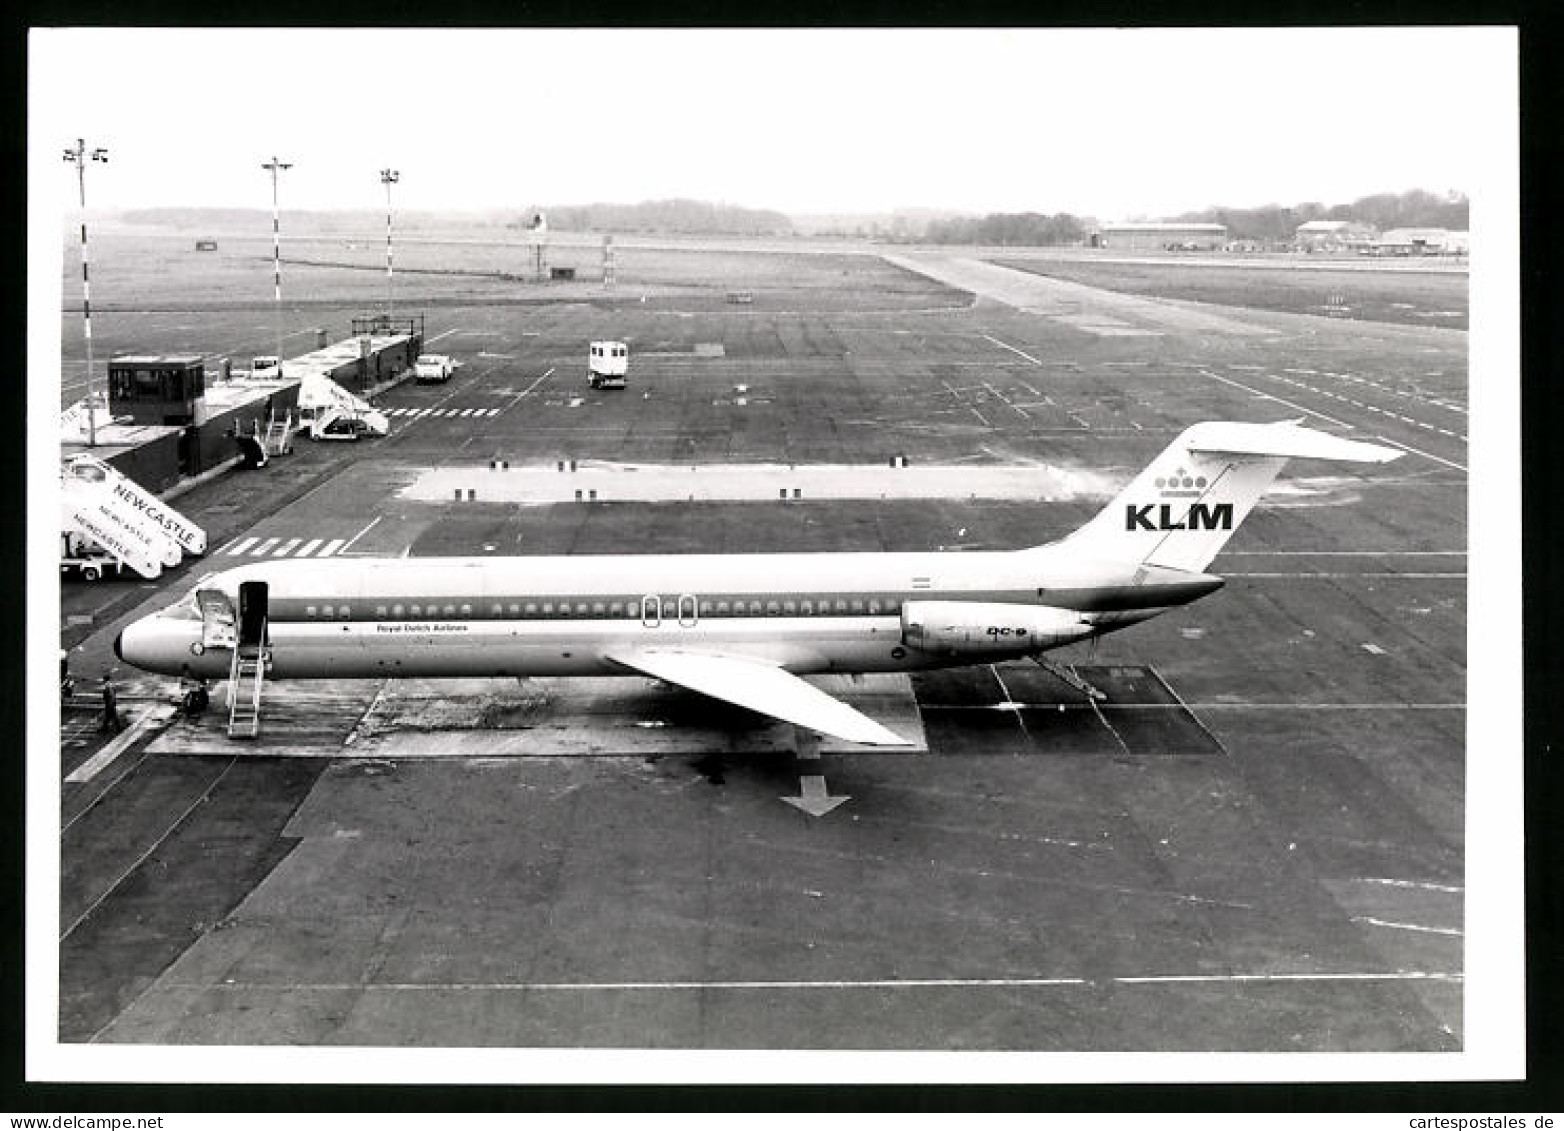 Fotografie Flughafen Newcastle, Flugzeug Douglas DC-9, Passagierflugzeug Der KLM, Kennung PH-DNP  - Aviation